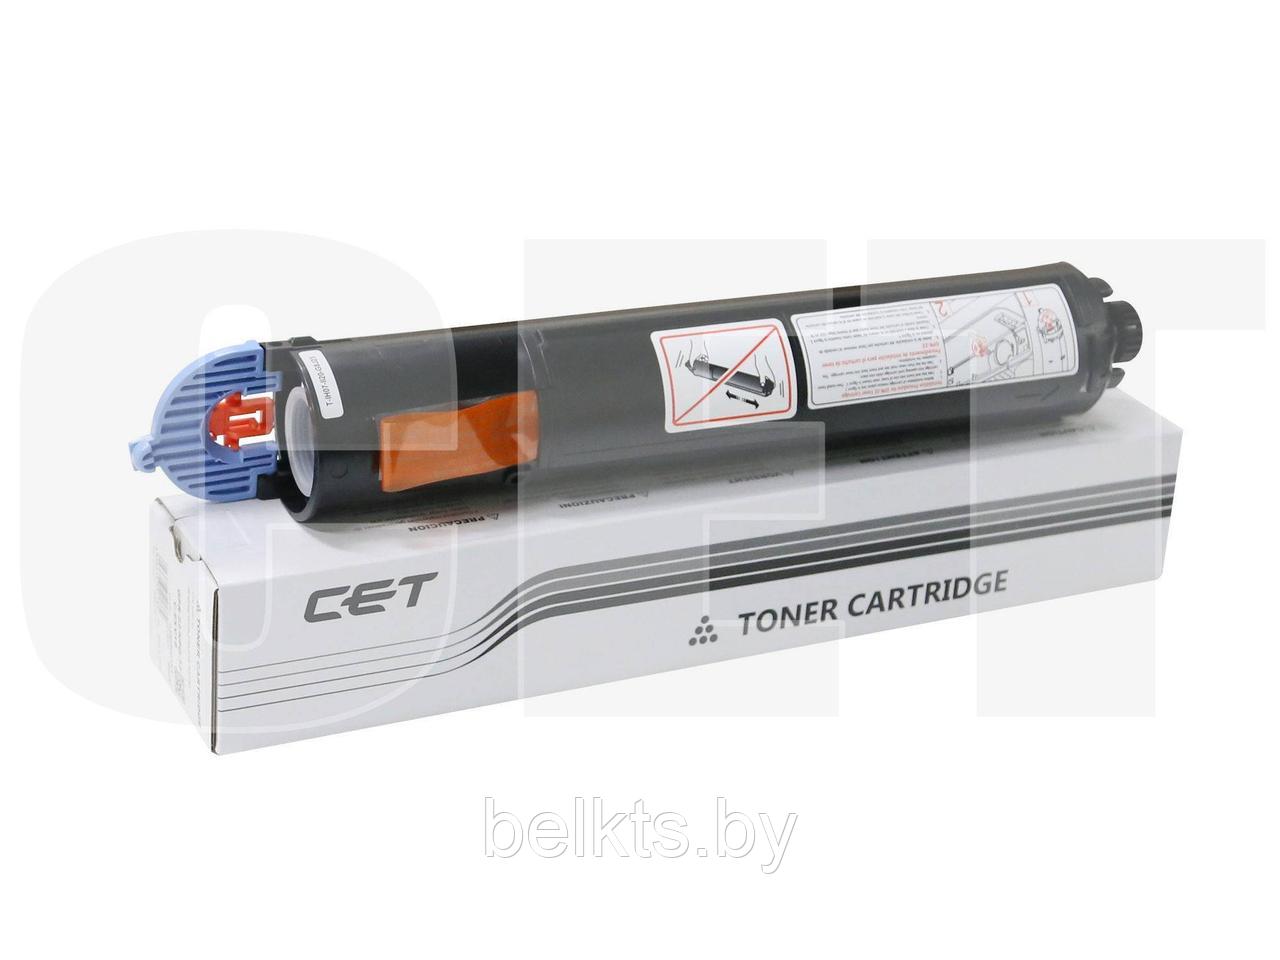 Тонер-картридж C-EXV18 для CANON iR1018/1019/1022/1023/1024/1025 (CET), 465г, 9000 стр., CET5777N